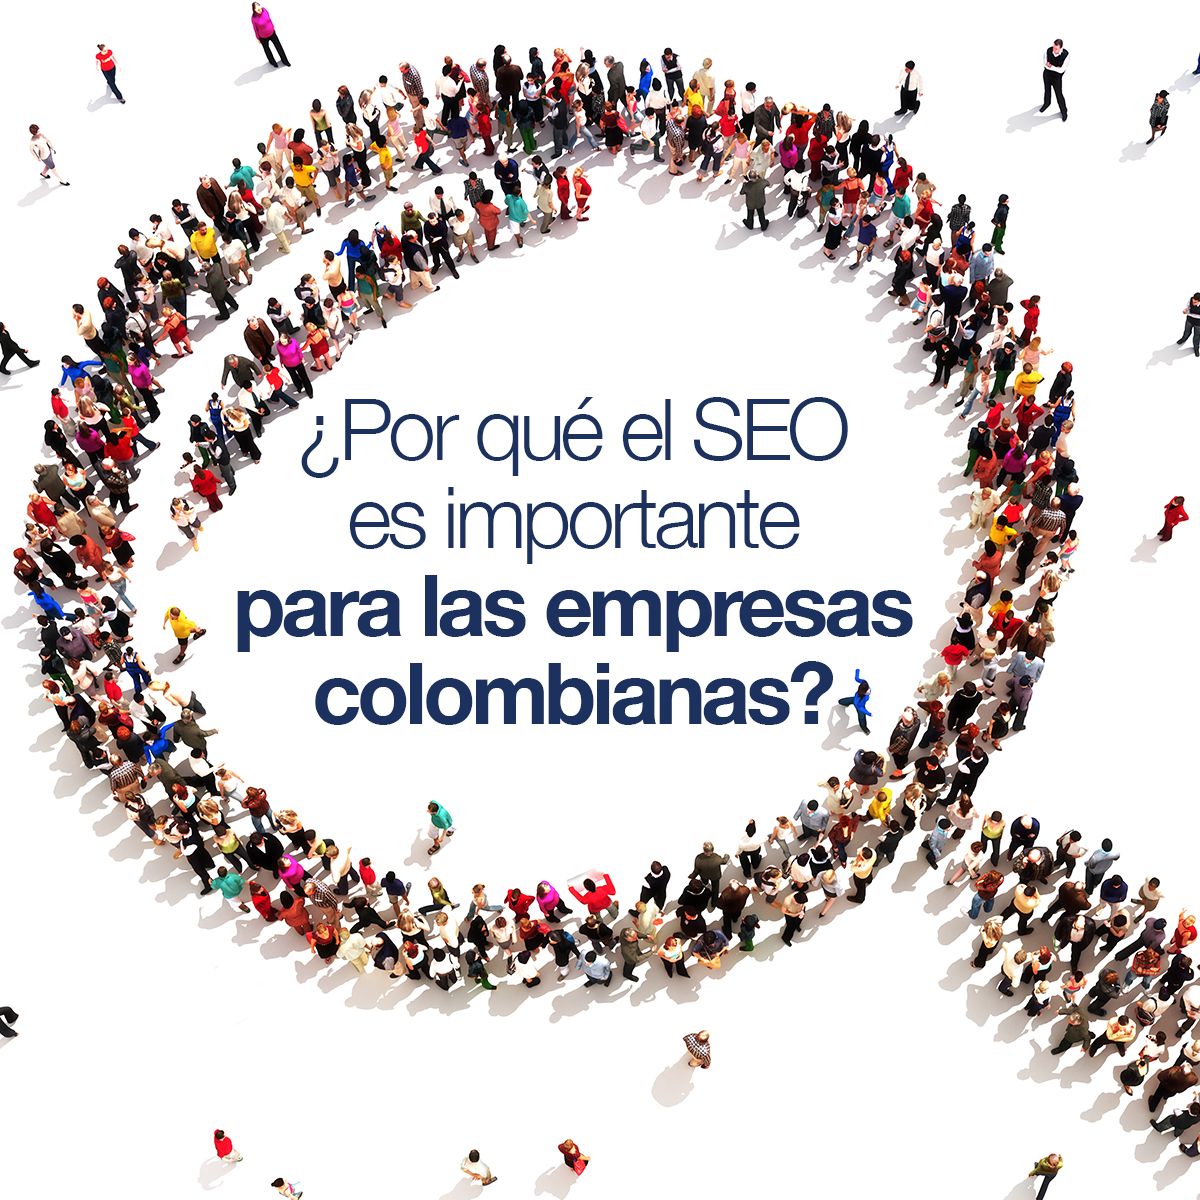 ¿Por qué el SEO es importante para las empresas colombianas?